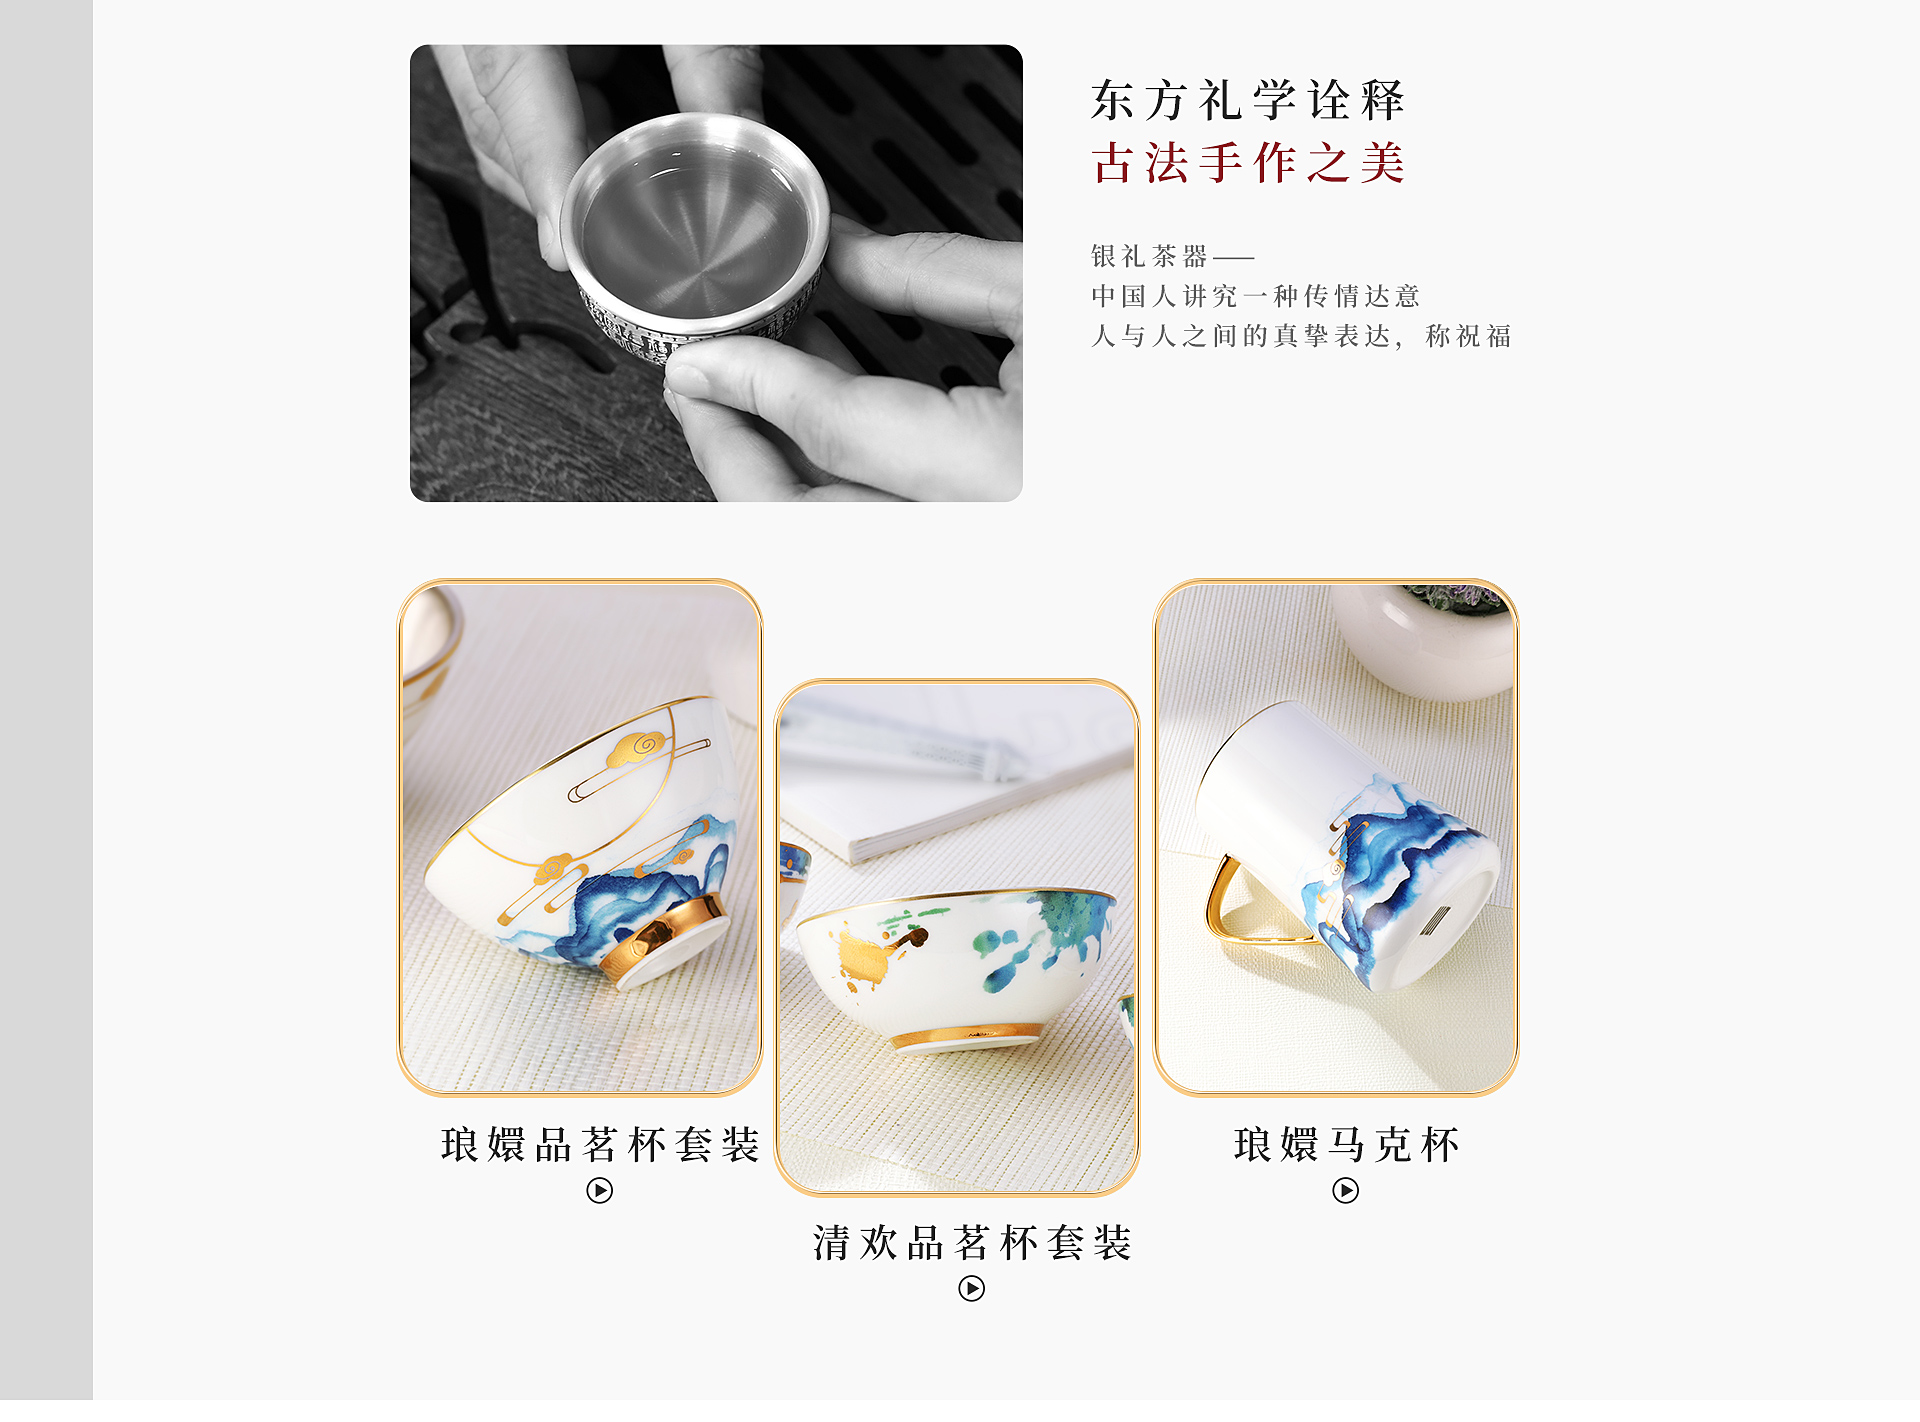 中国白银-私人定制-生活用品-工艺品